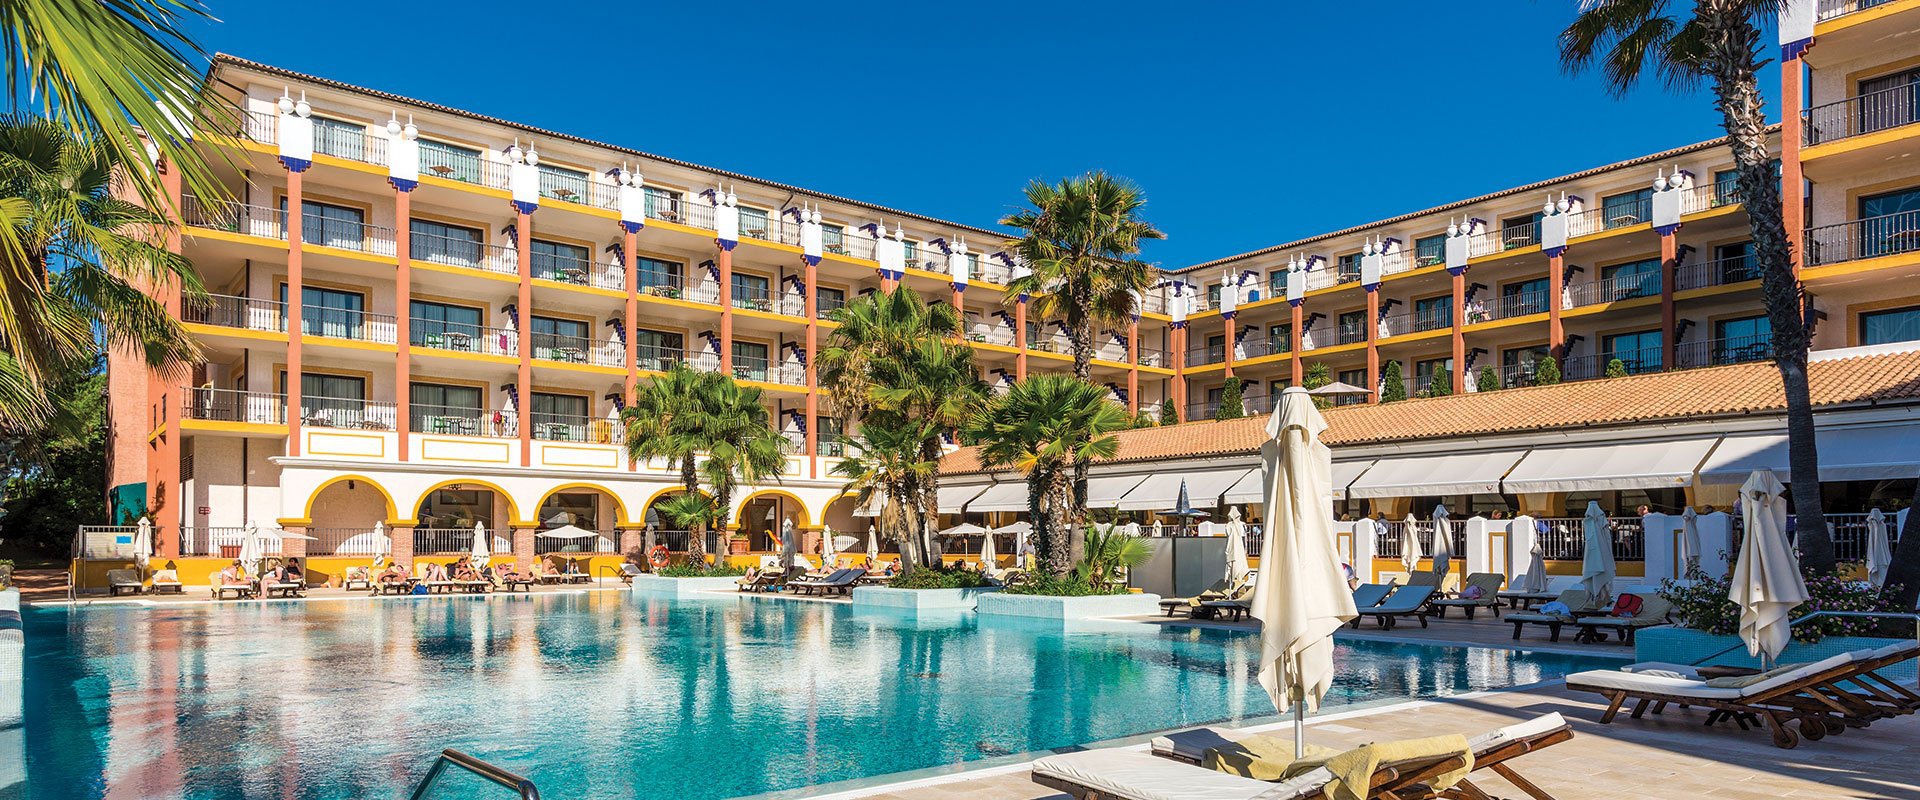 ¡servicios de calidad a tu disposición! Hotel TUI BLUE ISLA CRISTINA PALACE Isla Cristina, Huelva, España